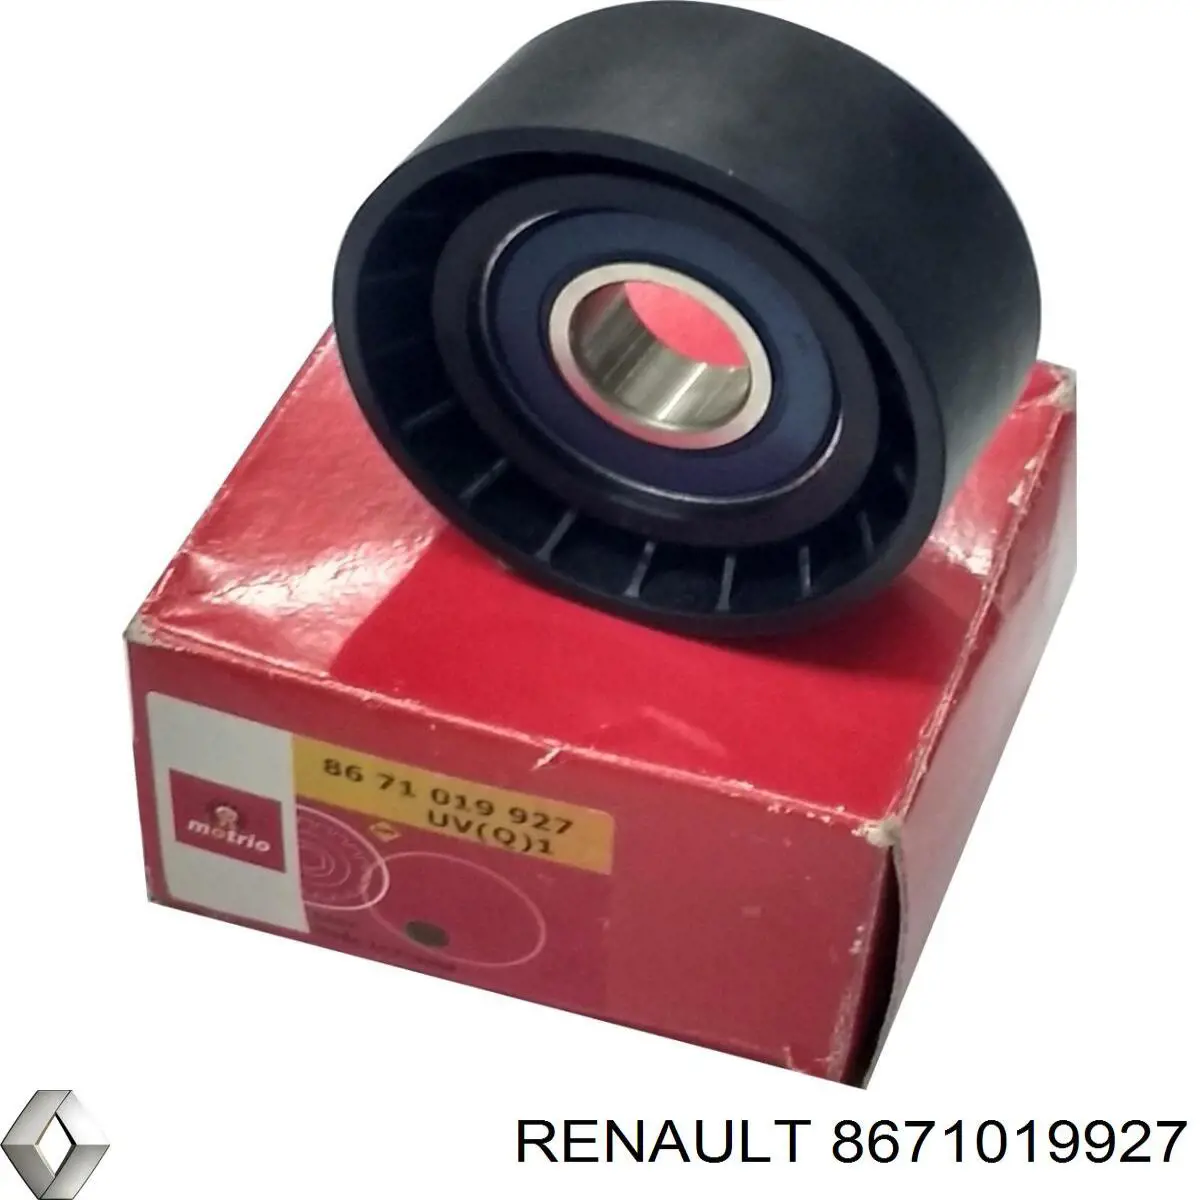 8671019927 Renault (RVI) polea inversión / guía, correa poli v